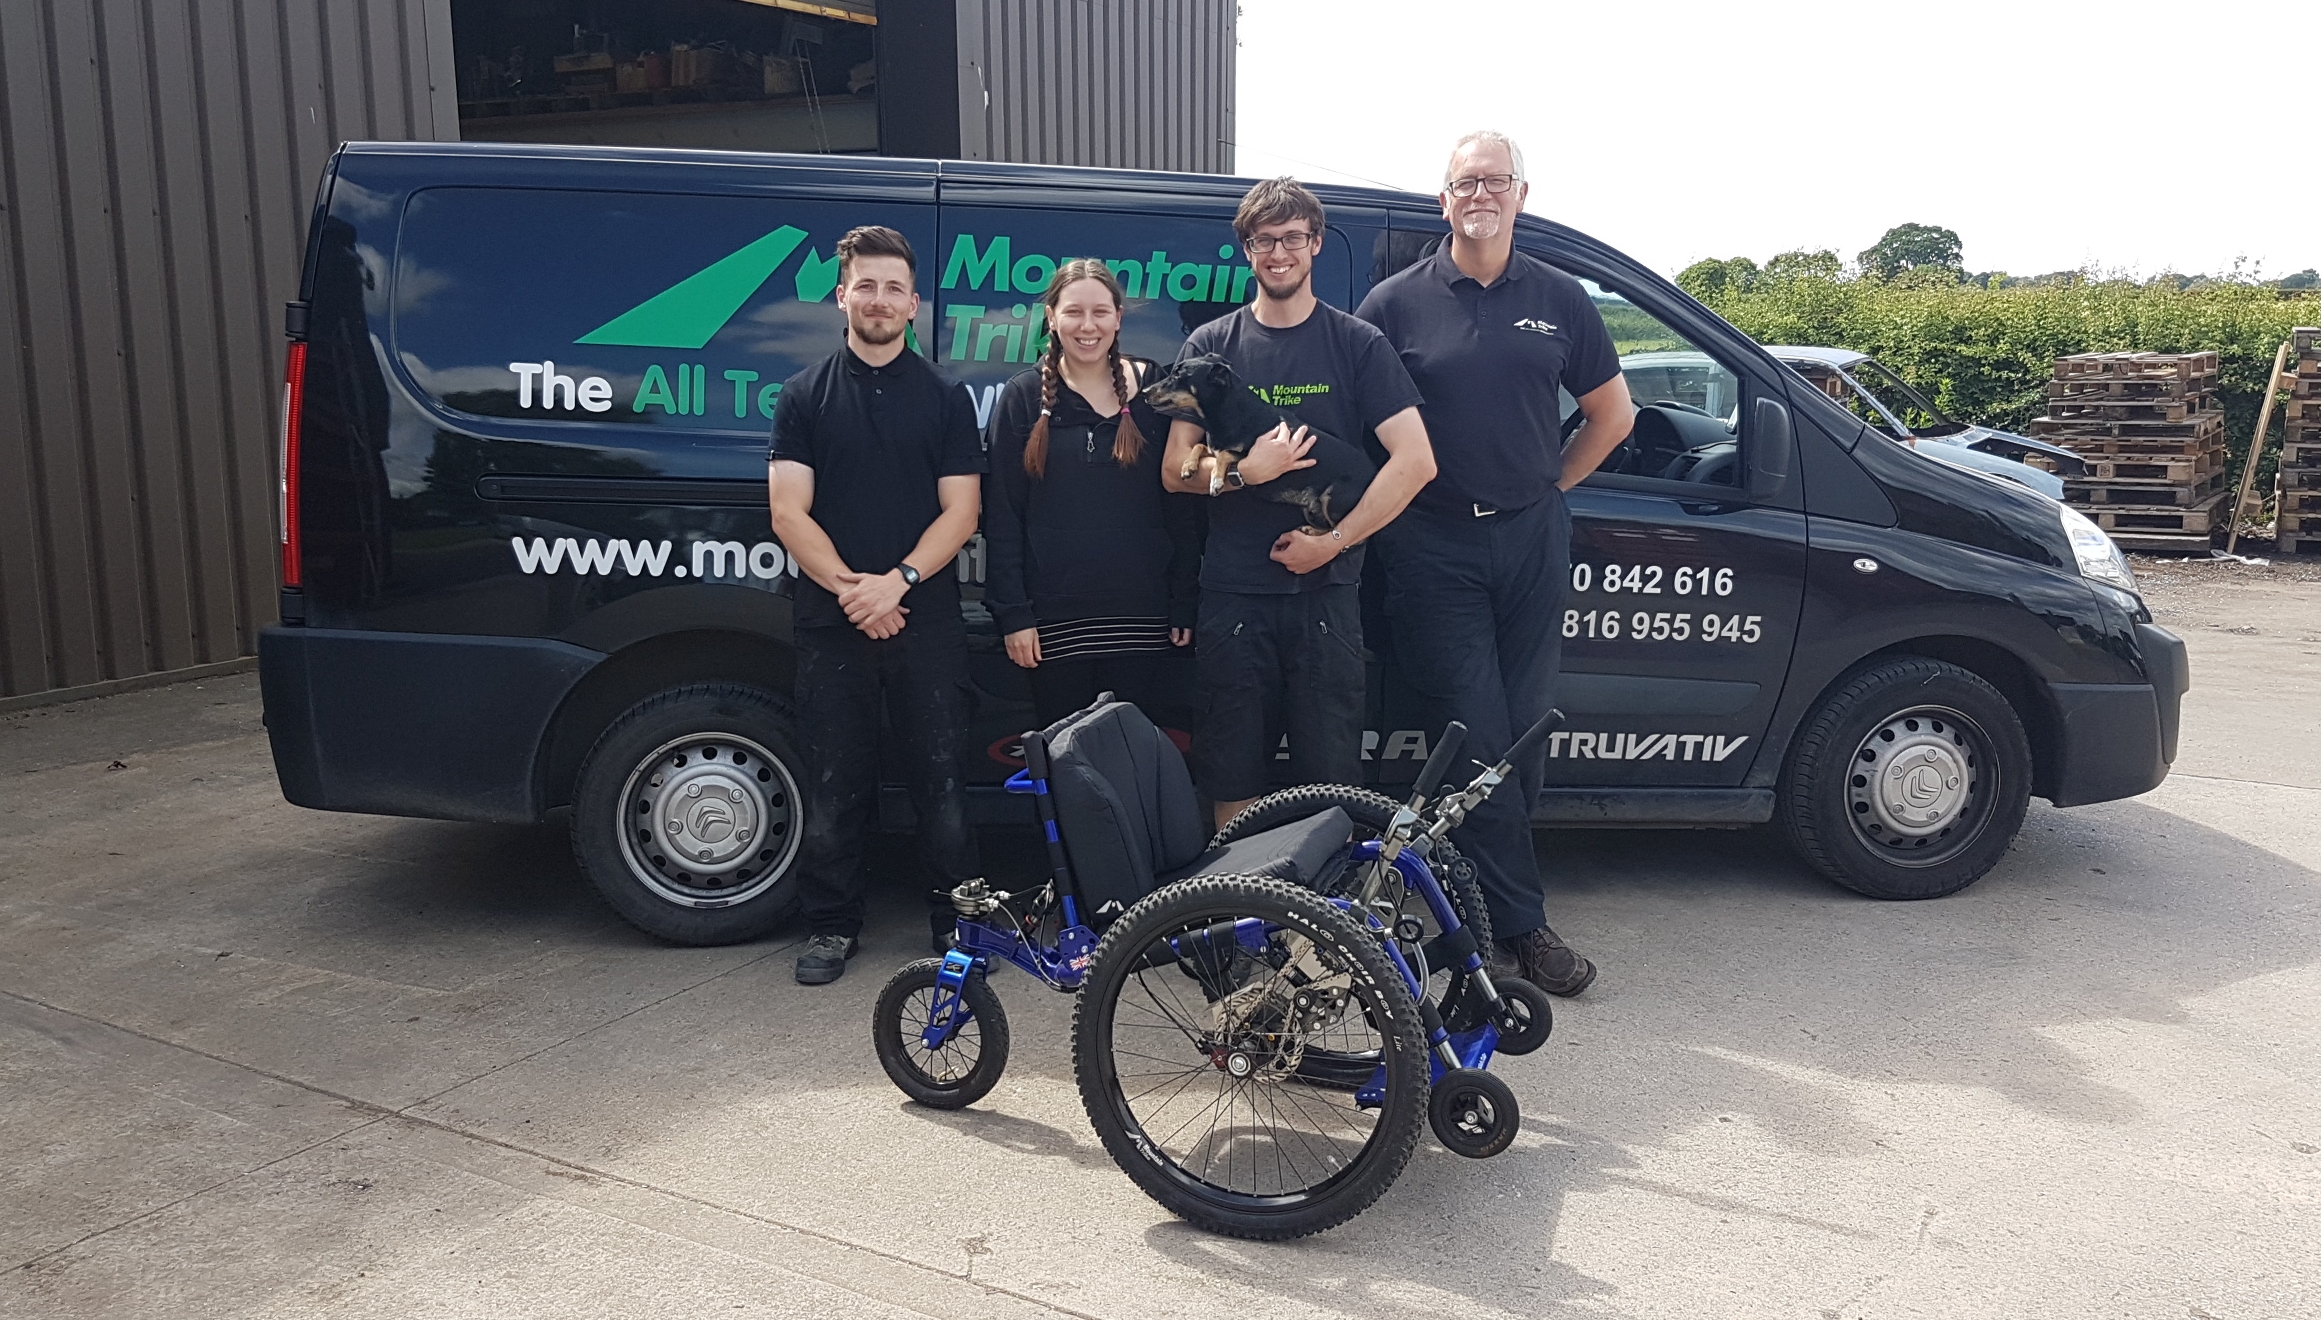 Mountain Trike all terrain wheelchair company expand manufacturing team